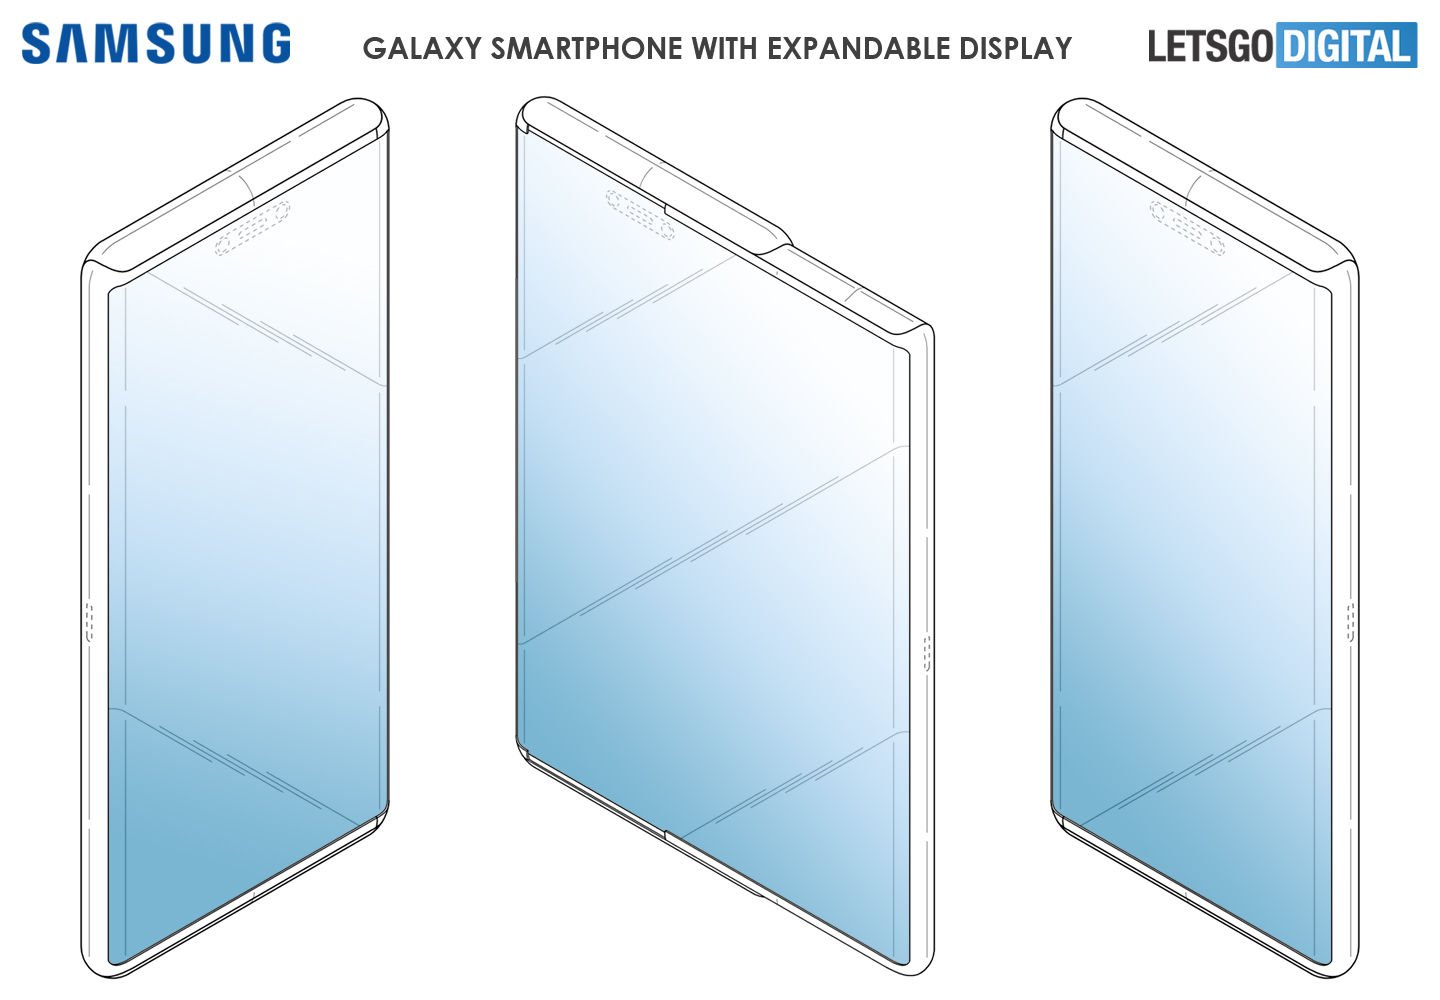 Patente de teléfono inteligente expandible de Samsung |  Fuente: LetsGoDigital